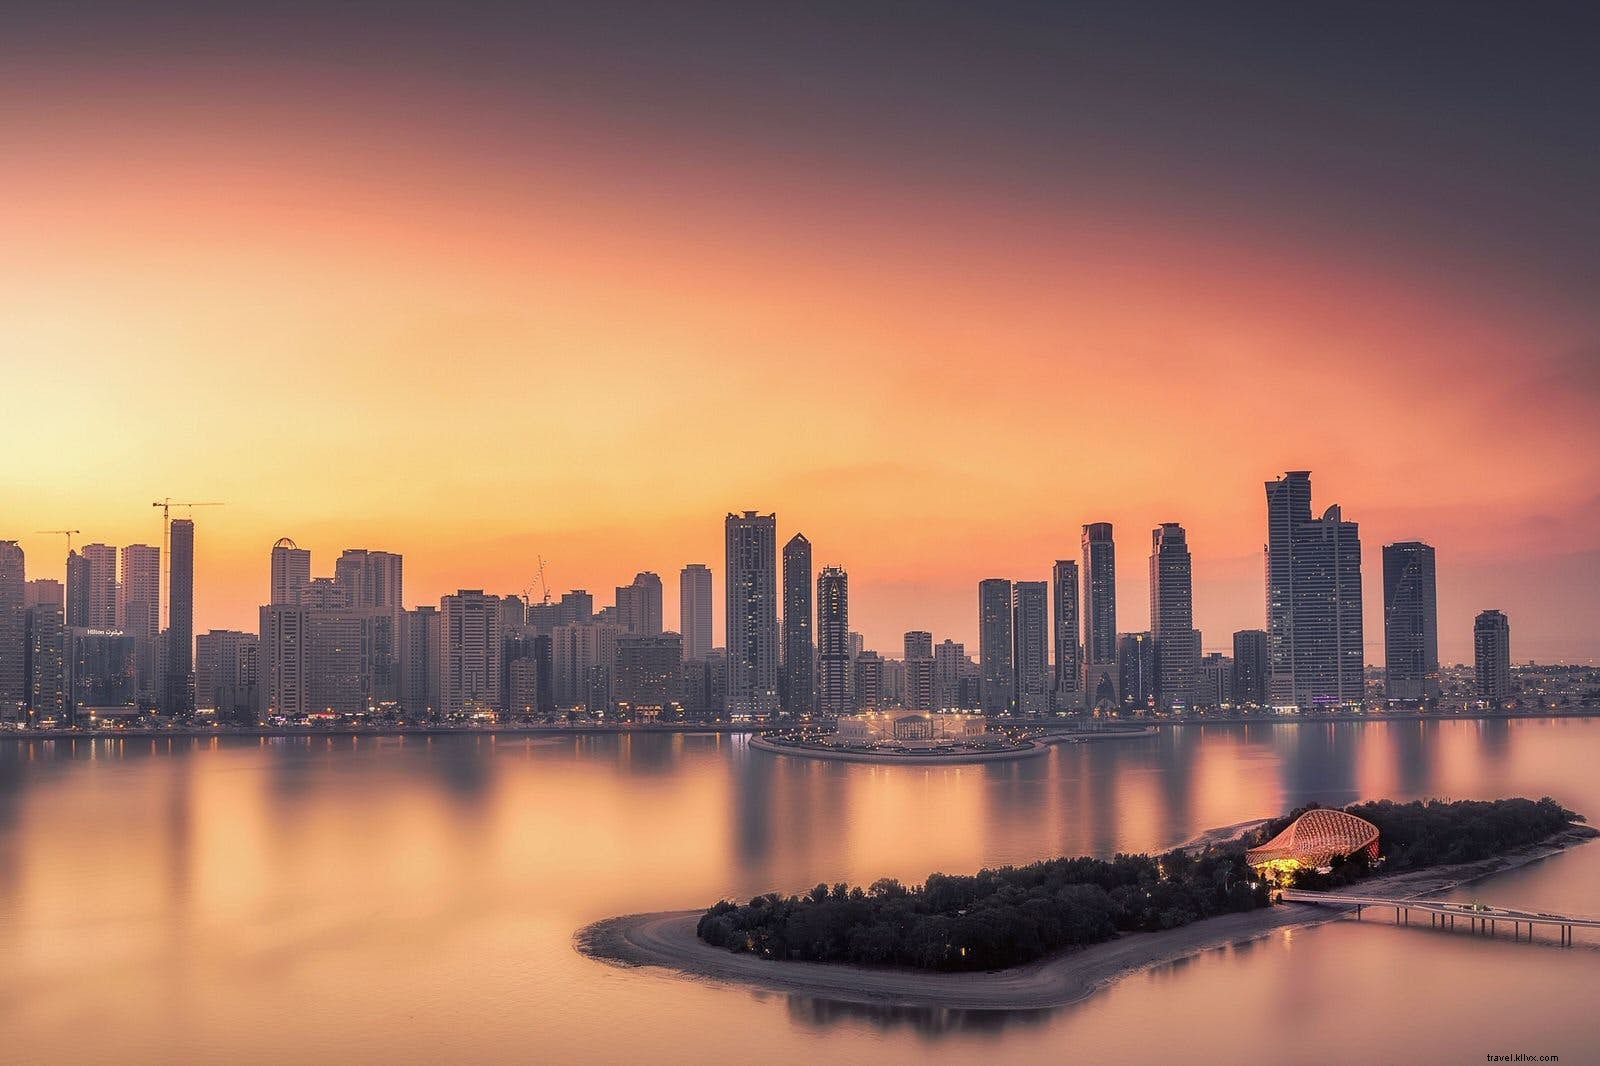 Em busca de silêncio em Sharjah, o promissor emirado dos Emirados Árabes Unidos 